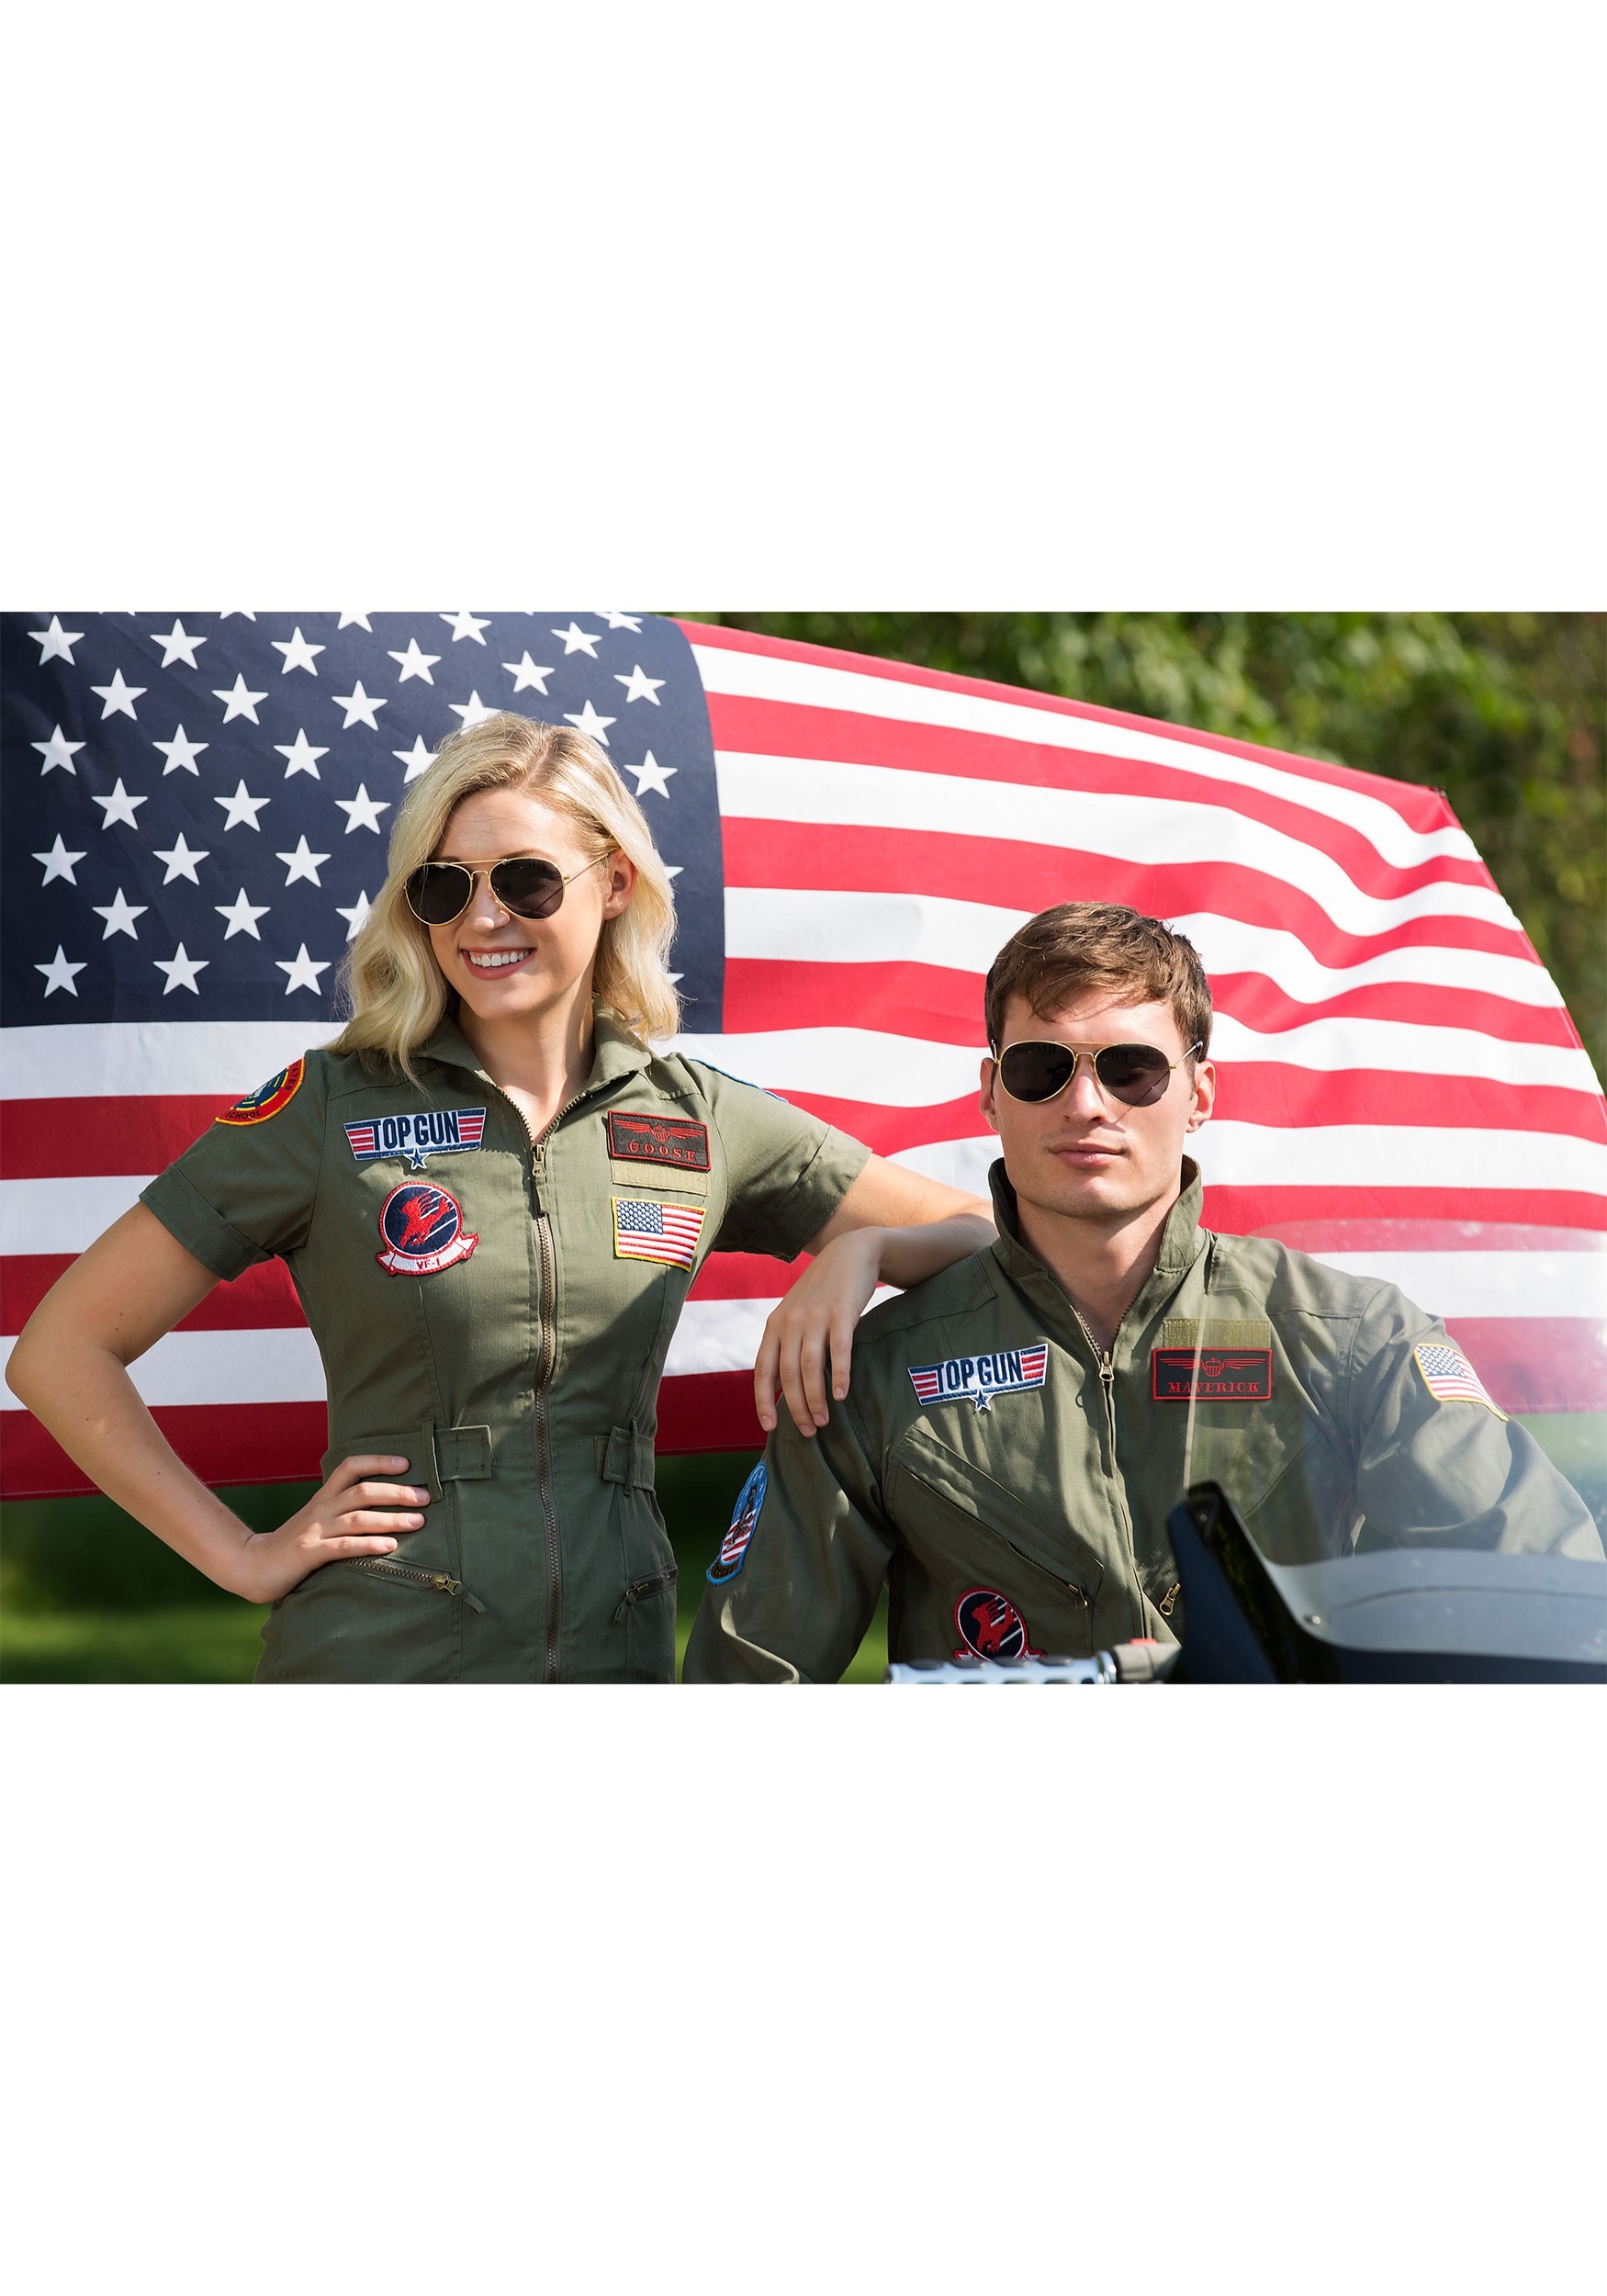 Top Gun Costume Flight Suit For Men , Pilot Halloween Costume